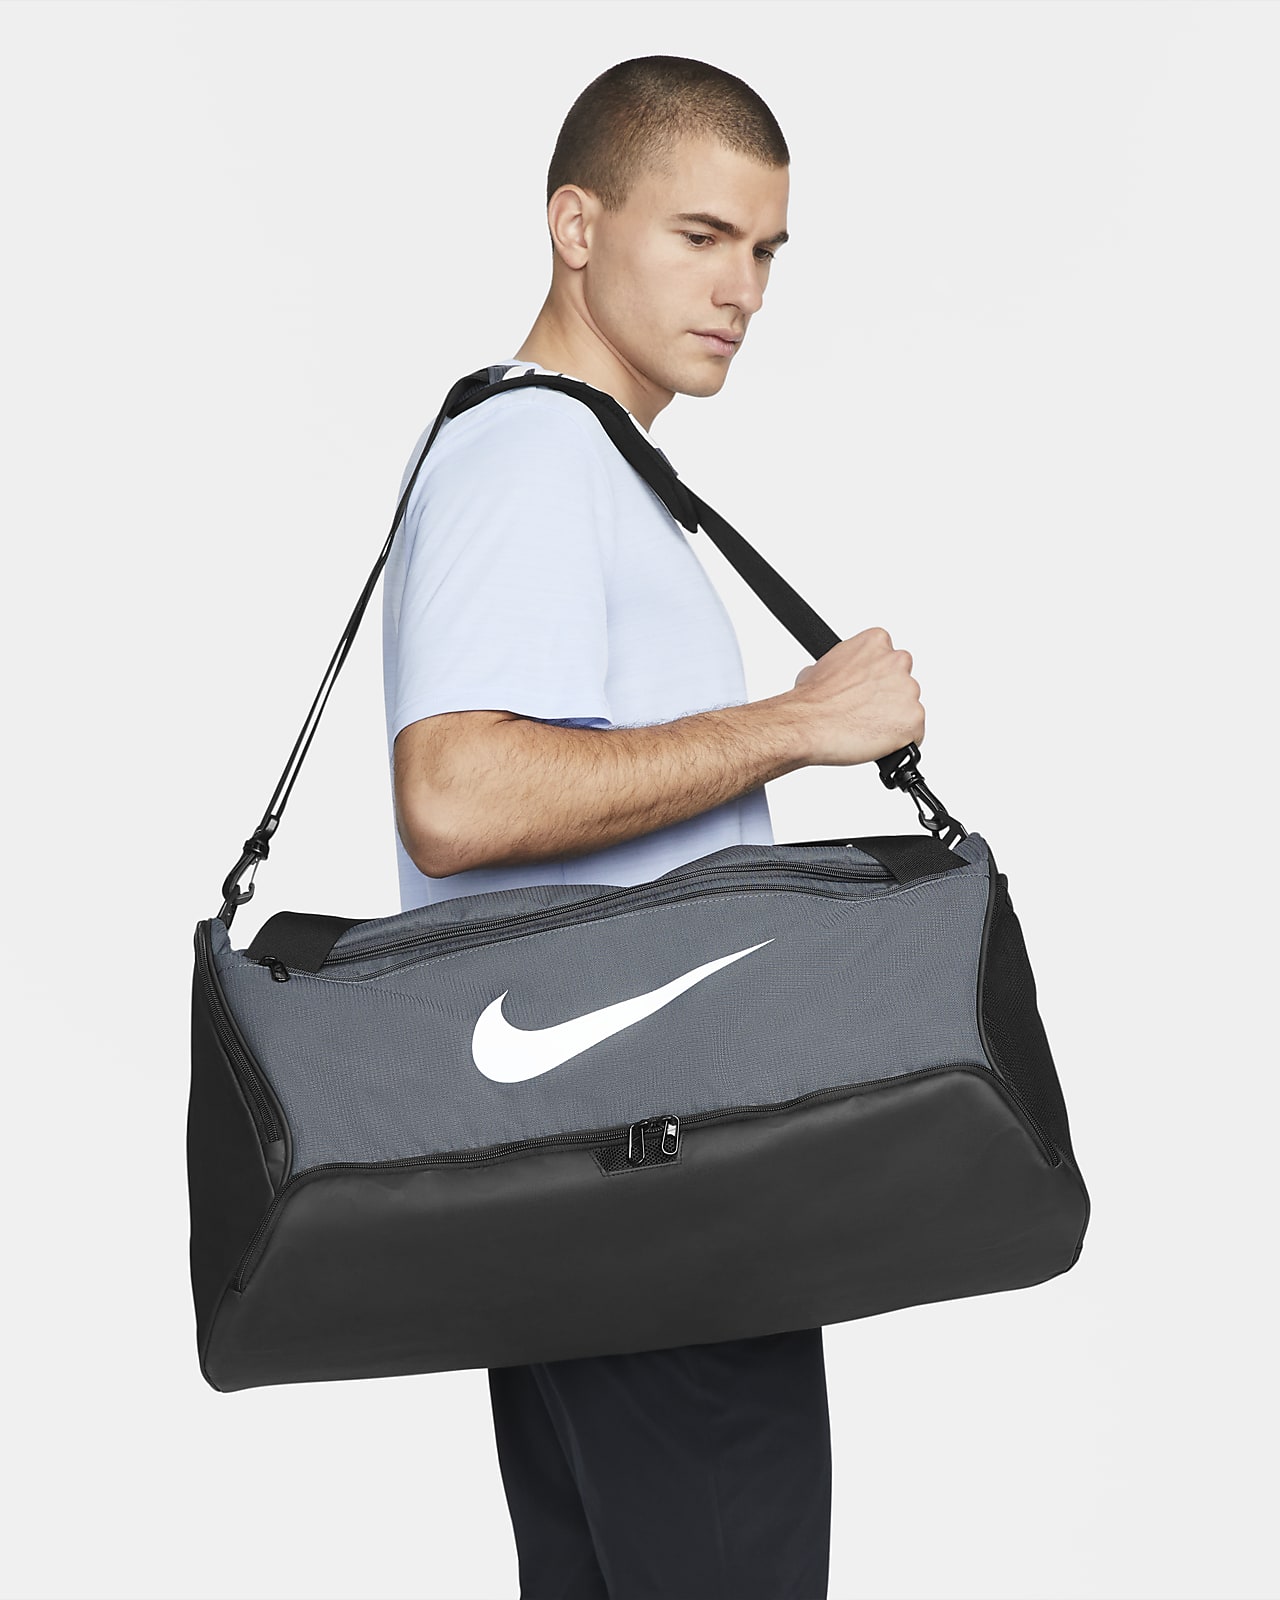 Nike / Brasilia 9.5 Training Duffel Bag (Medium)